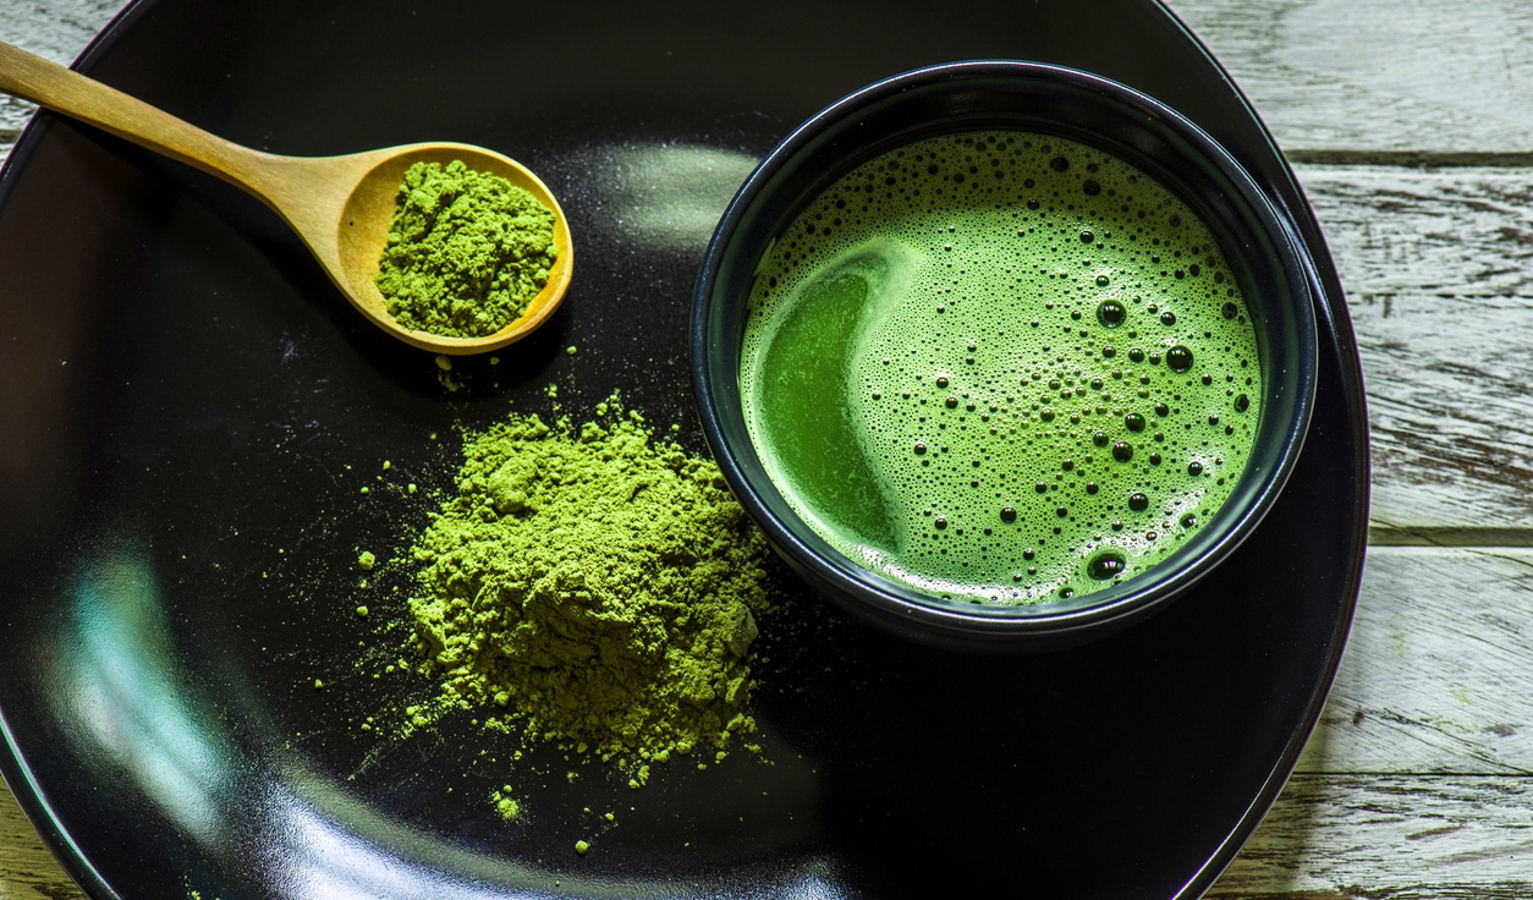 Chá verde é um tipo de chá não oxidado, conhecido por suas propriedades antioxidantes e seu sabor leve e refrescante